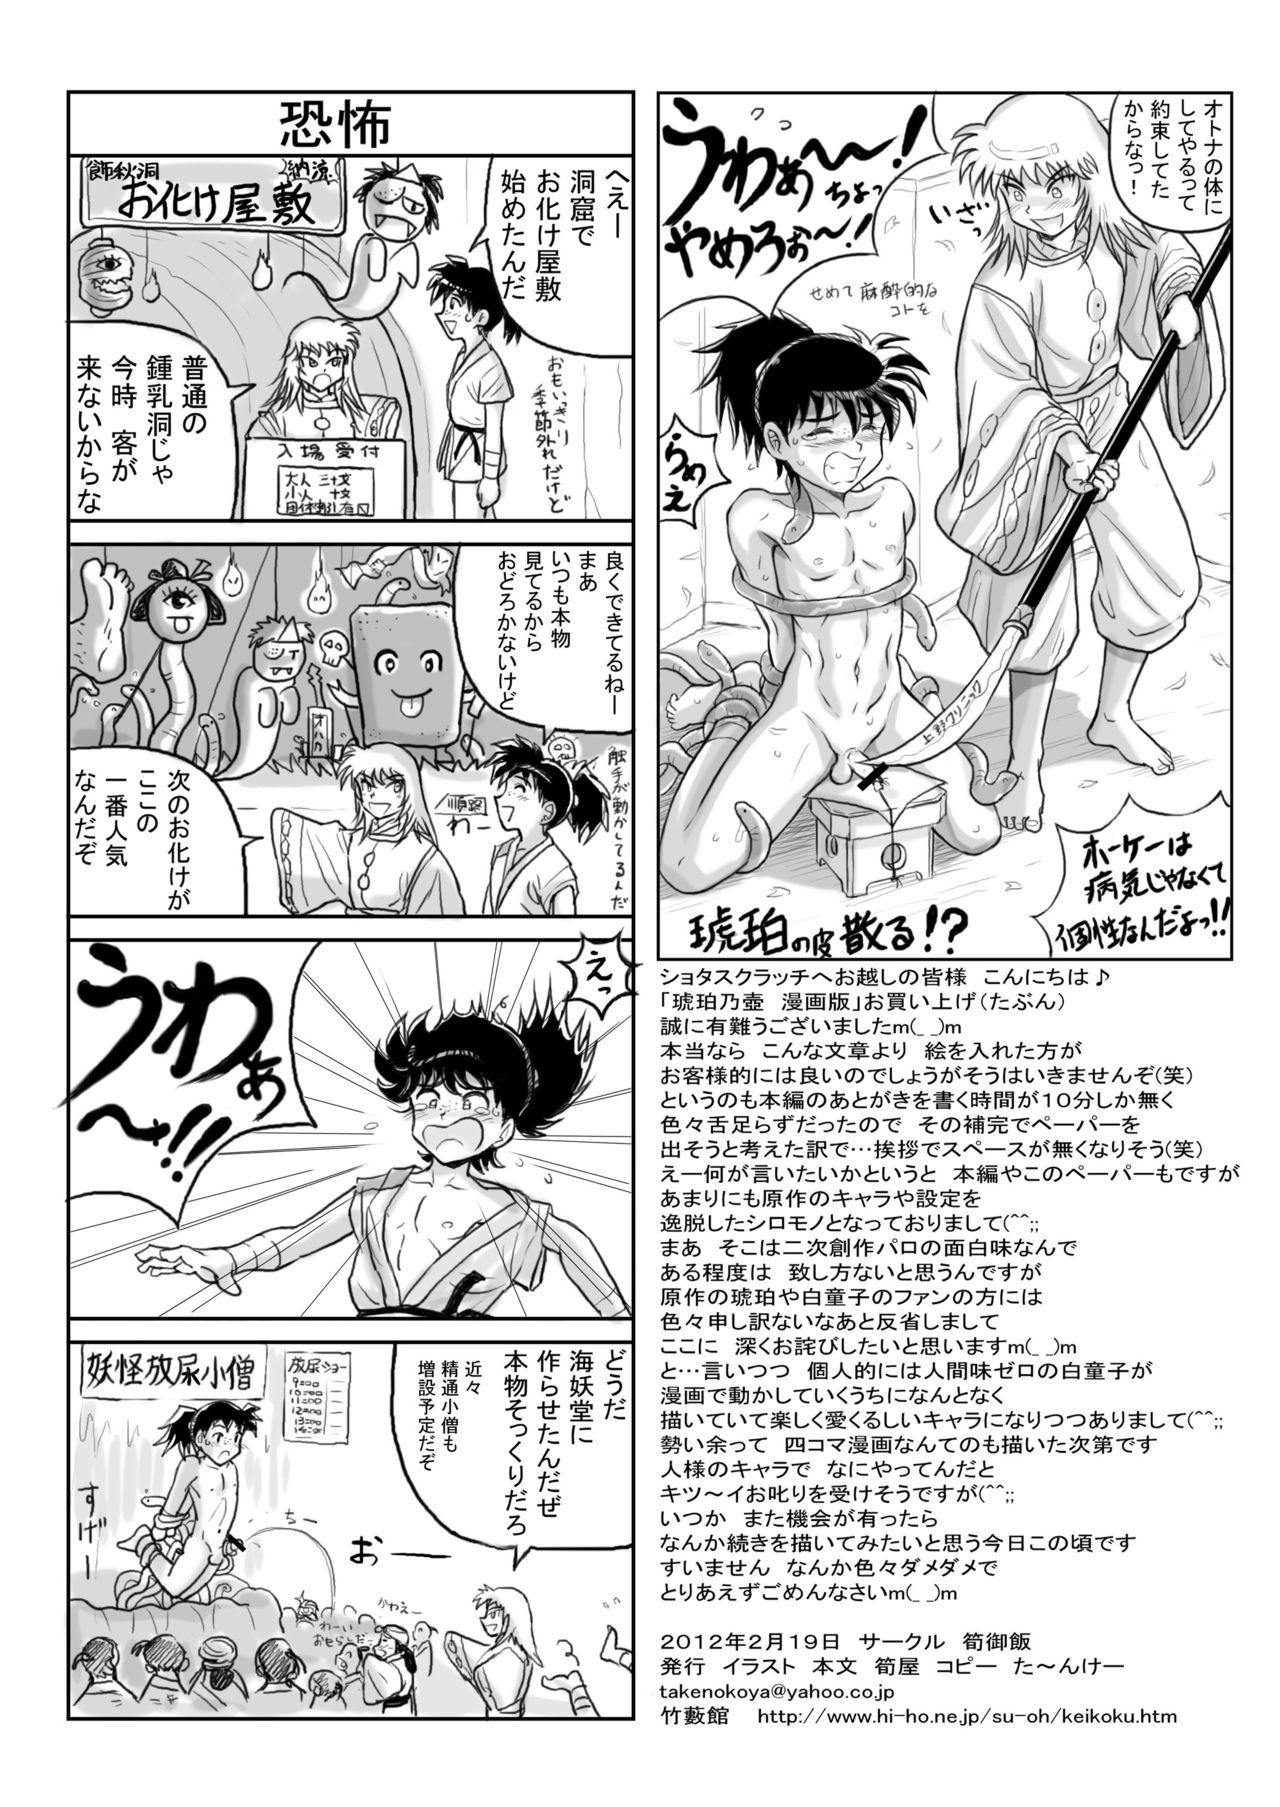 Kohaku no Tsubo Manga-ban 35